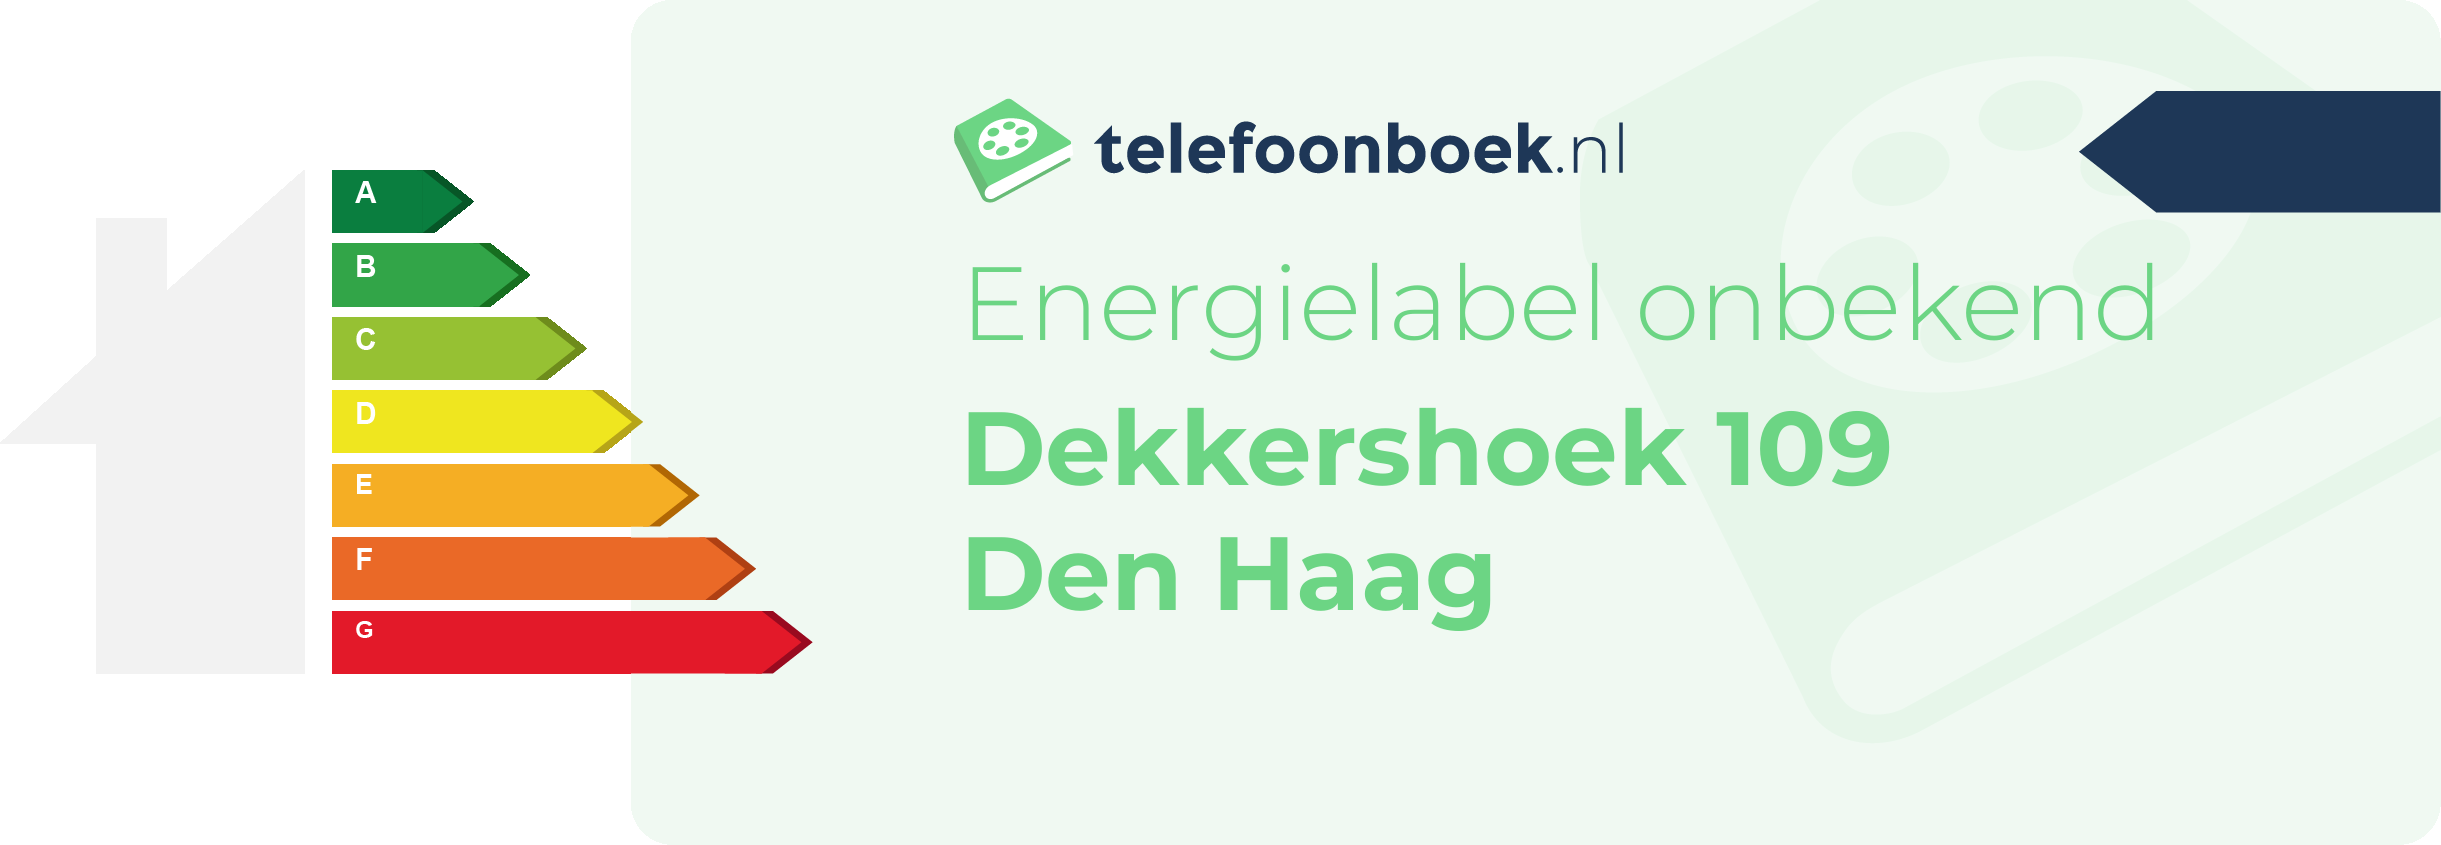 Energielabel Dekkershoek 109 Den Haag